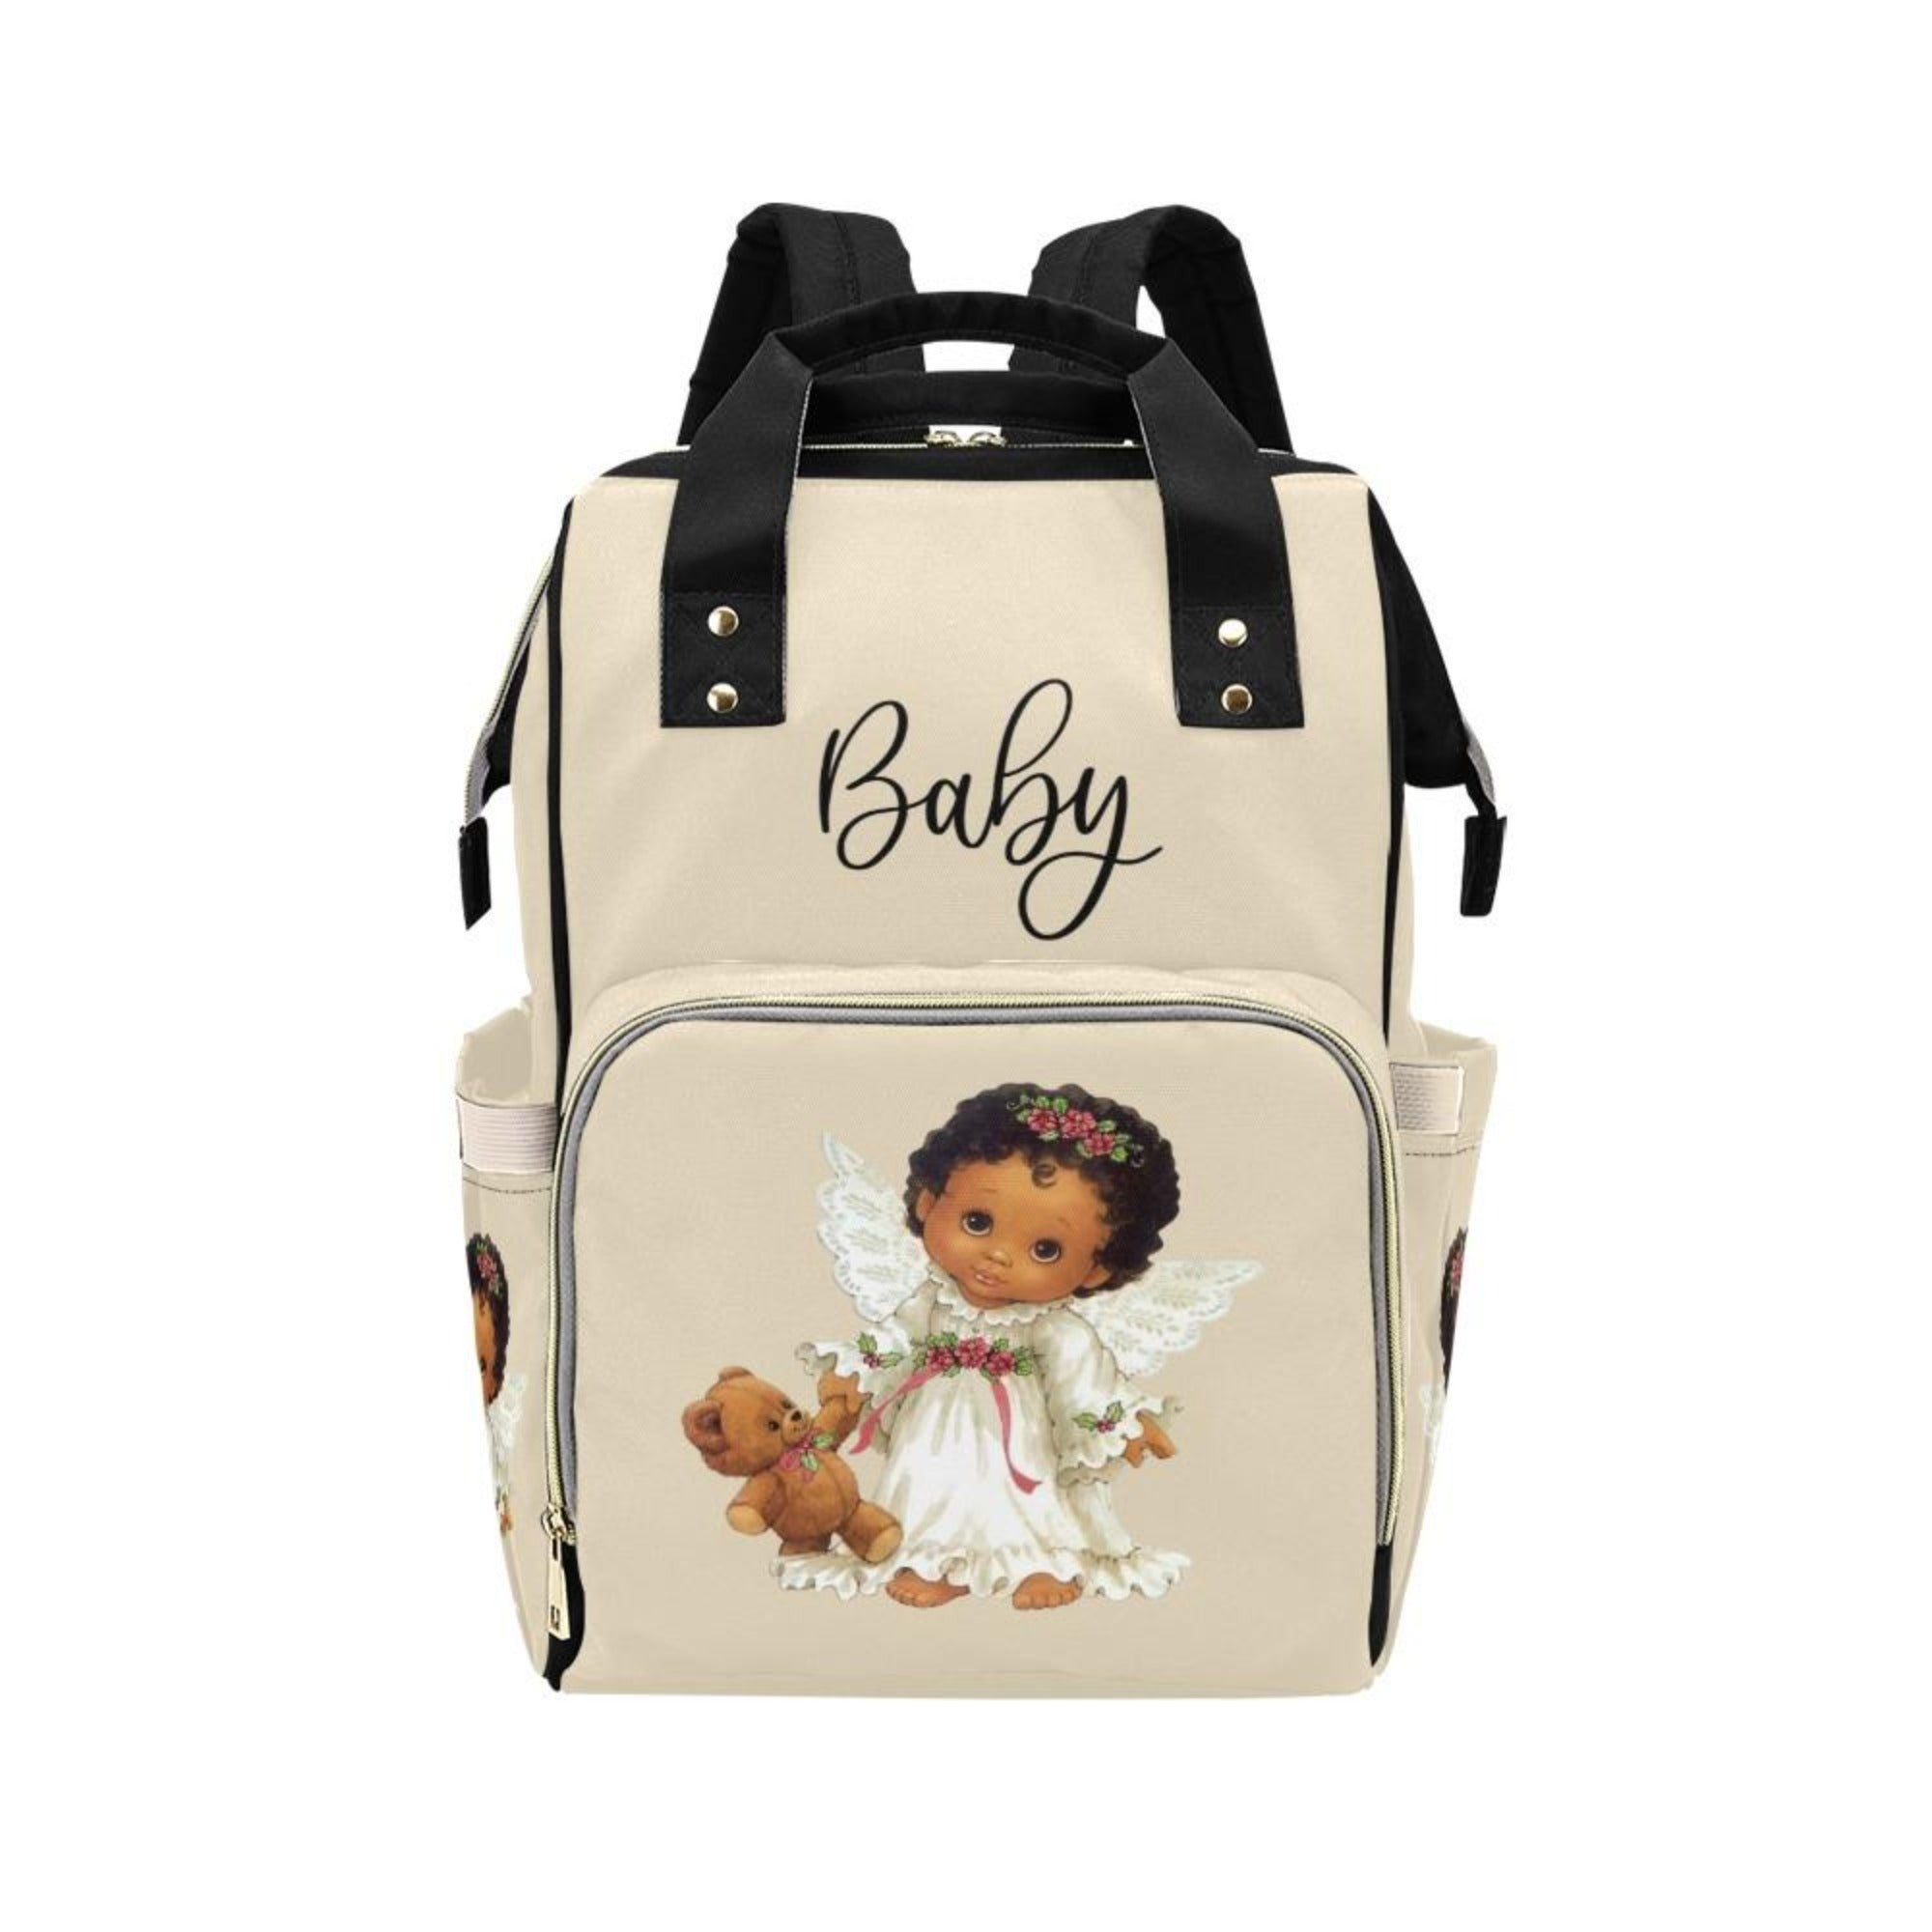 Designer Diaper Bags - Backpack Baby Bag Cutest African American Baby Angel Beige Multi-Function Backpack